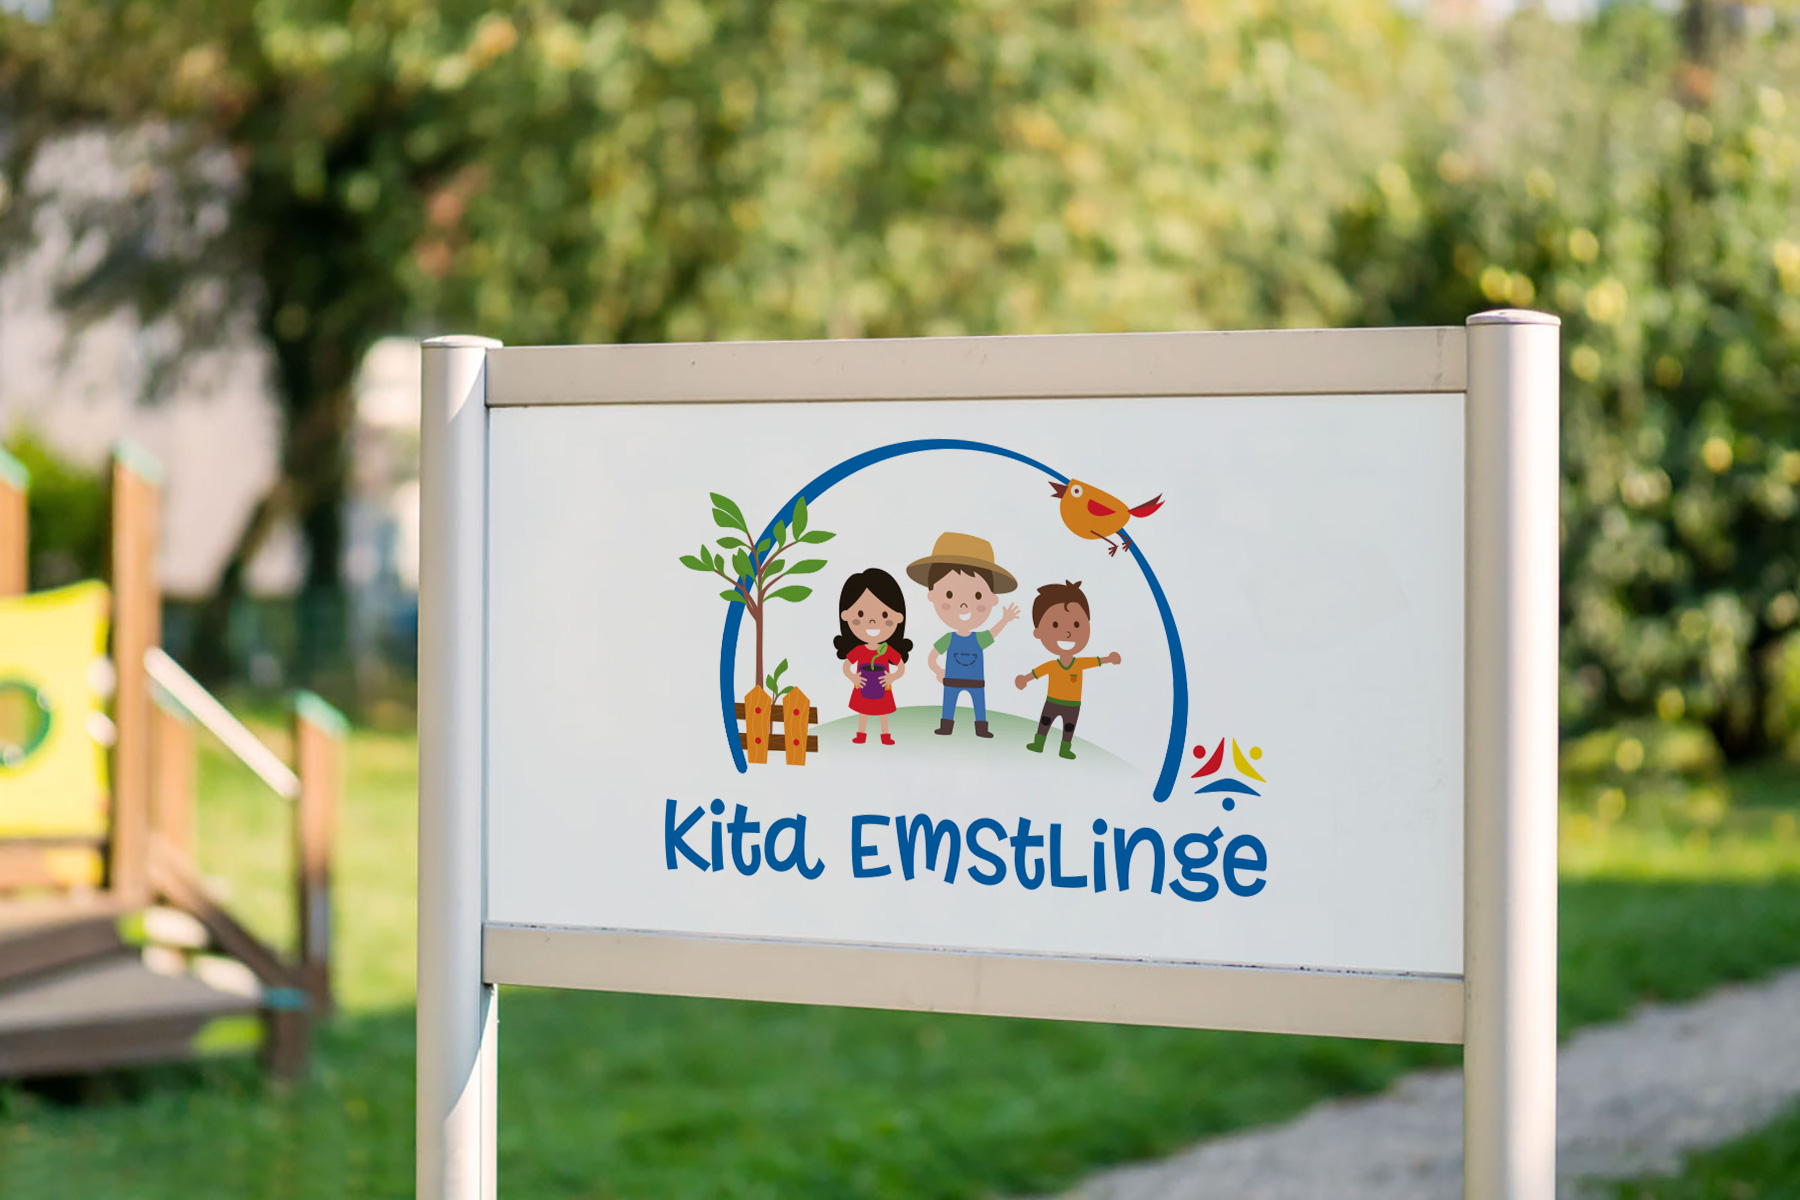 Eine neue Kindertagesstätte in Hagen (Emst)